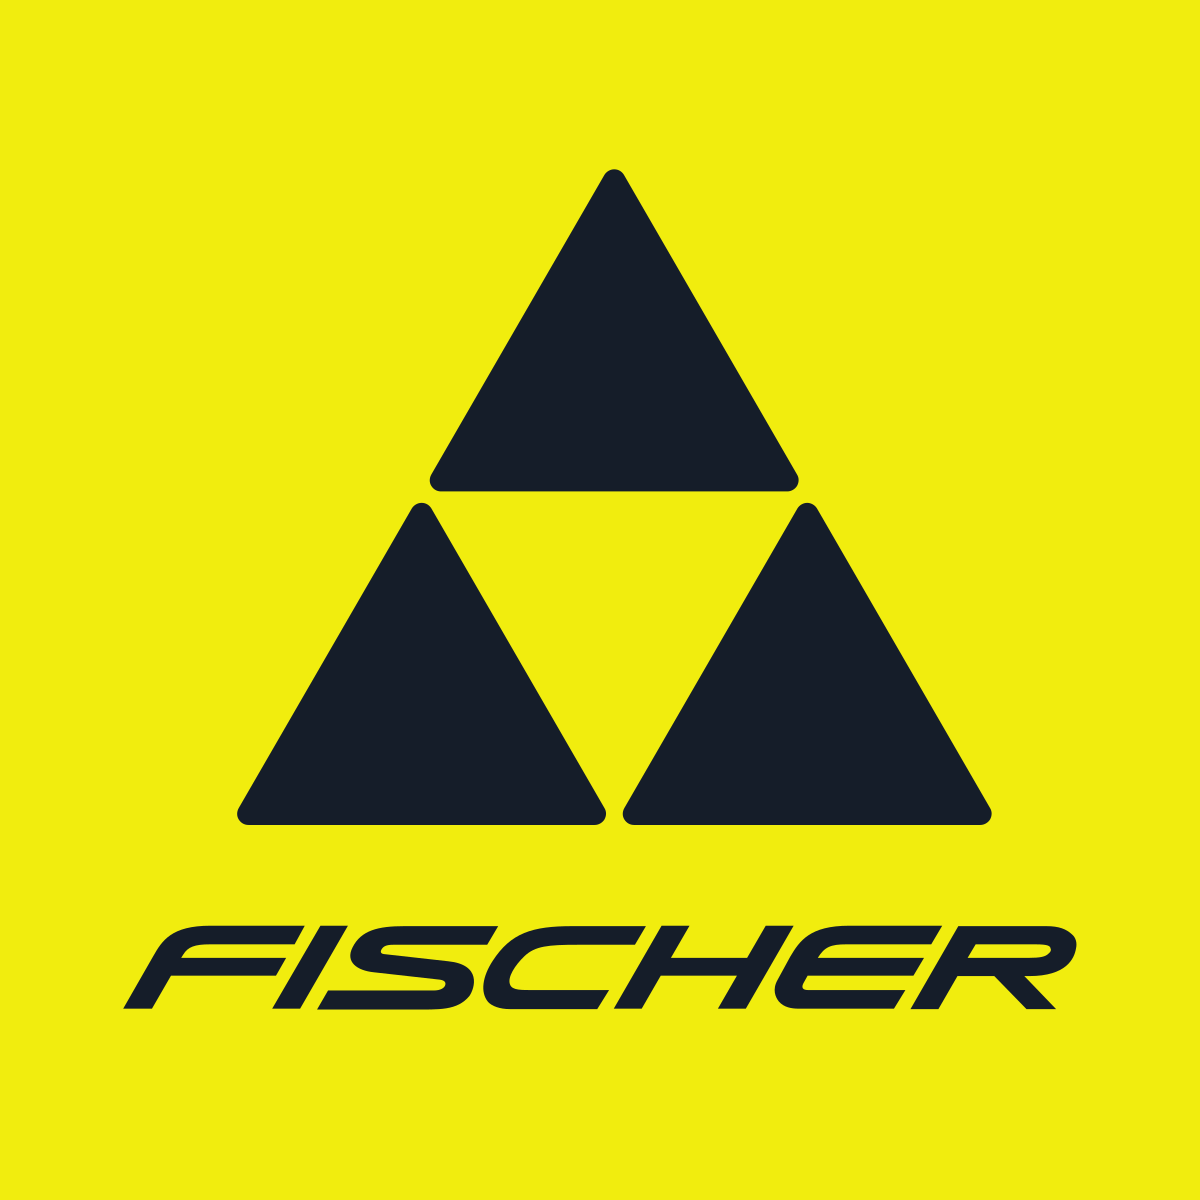 Fischer_logo.svg